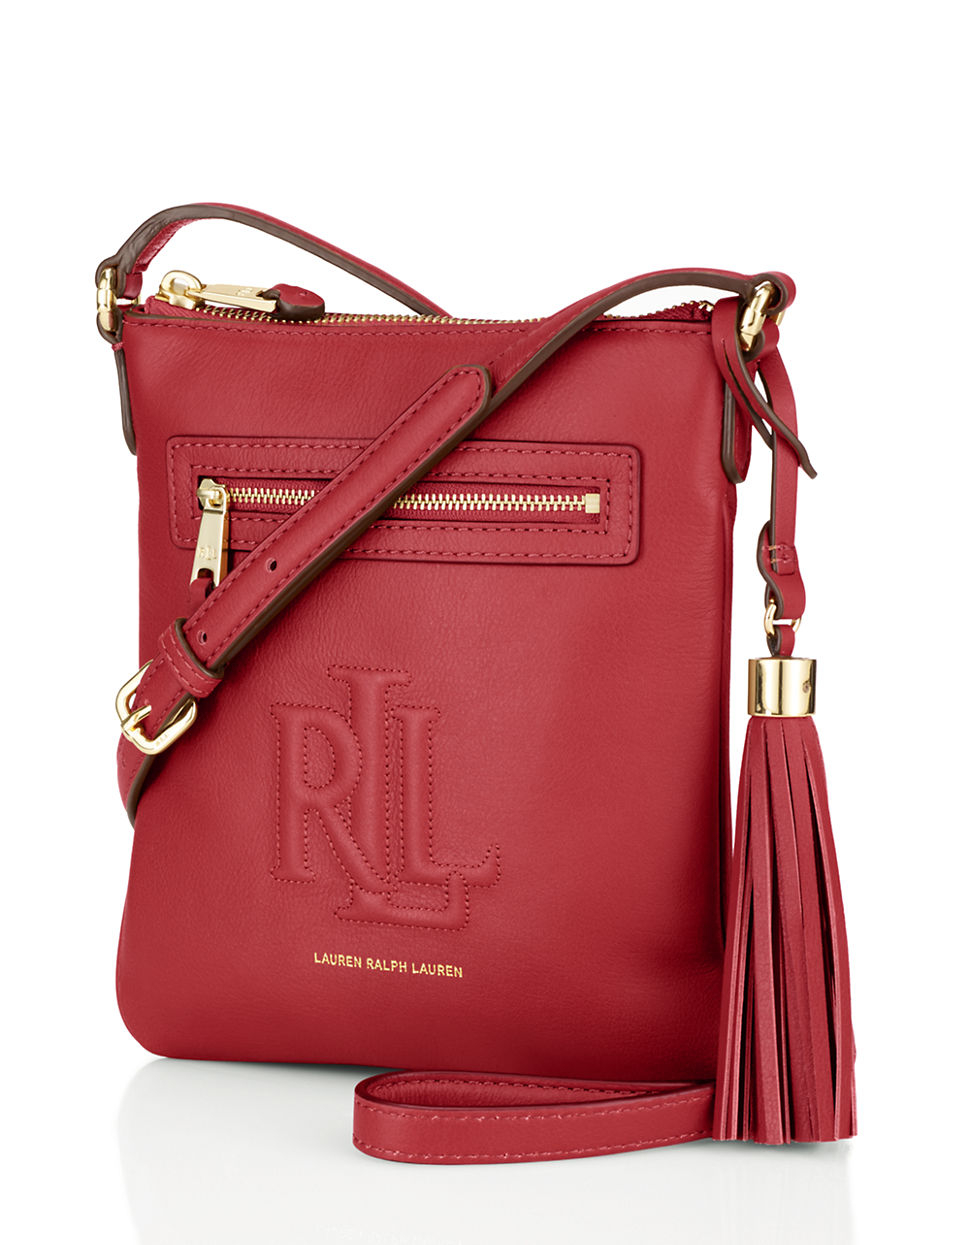 Lyst - Lauren by ralph lauren Leather Crossbody Bag in Red